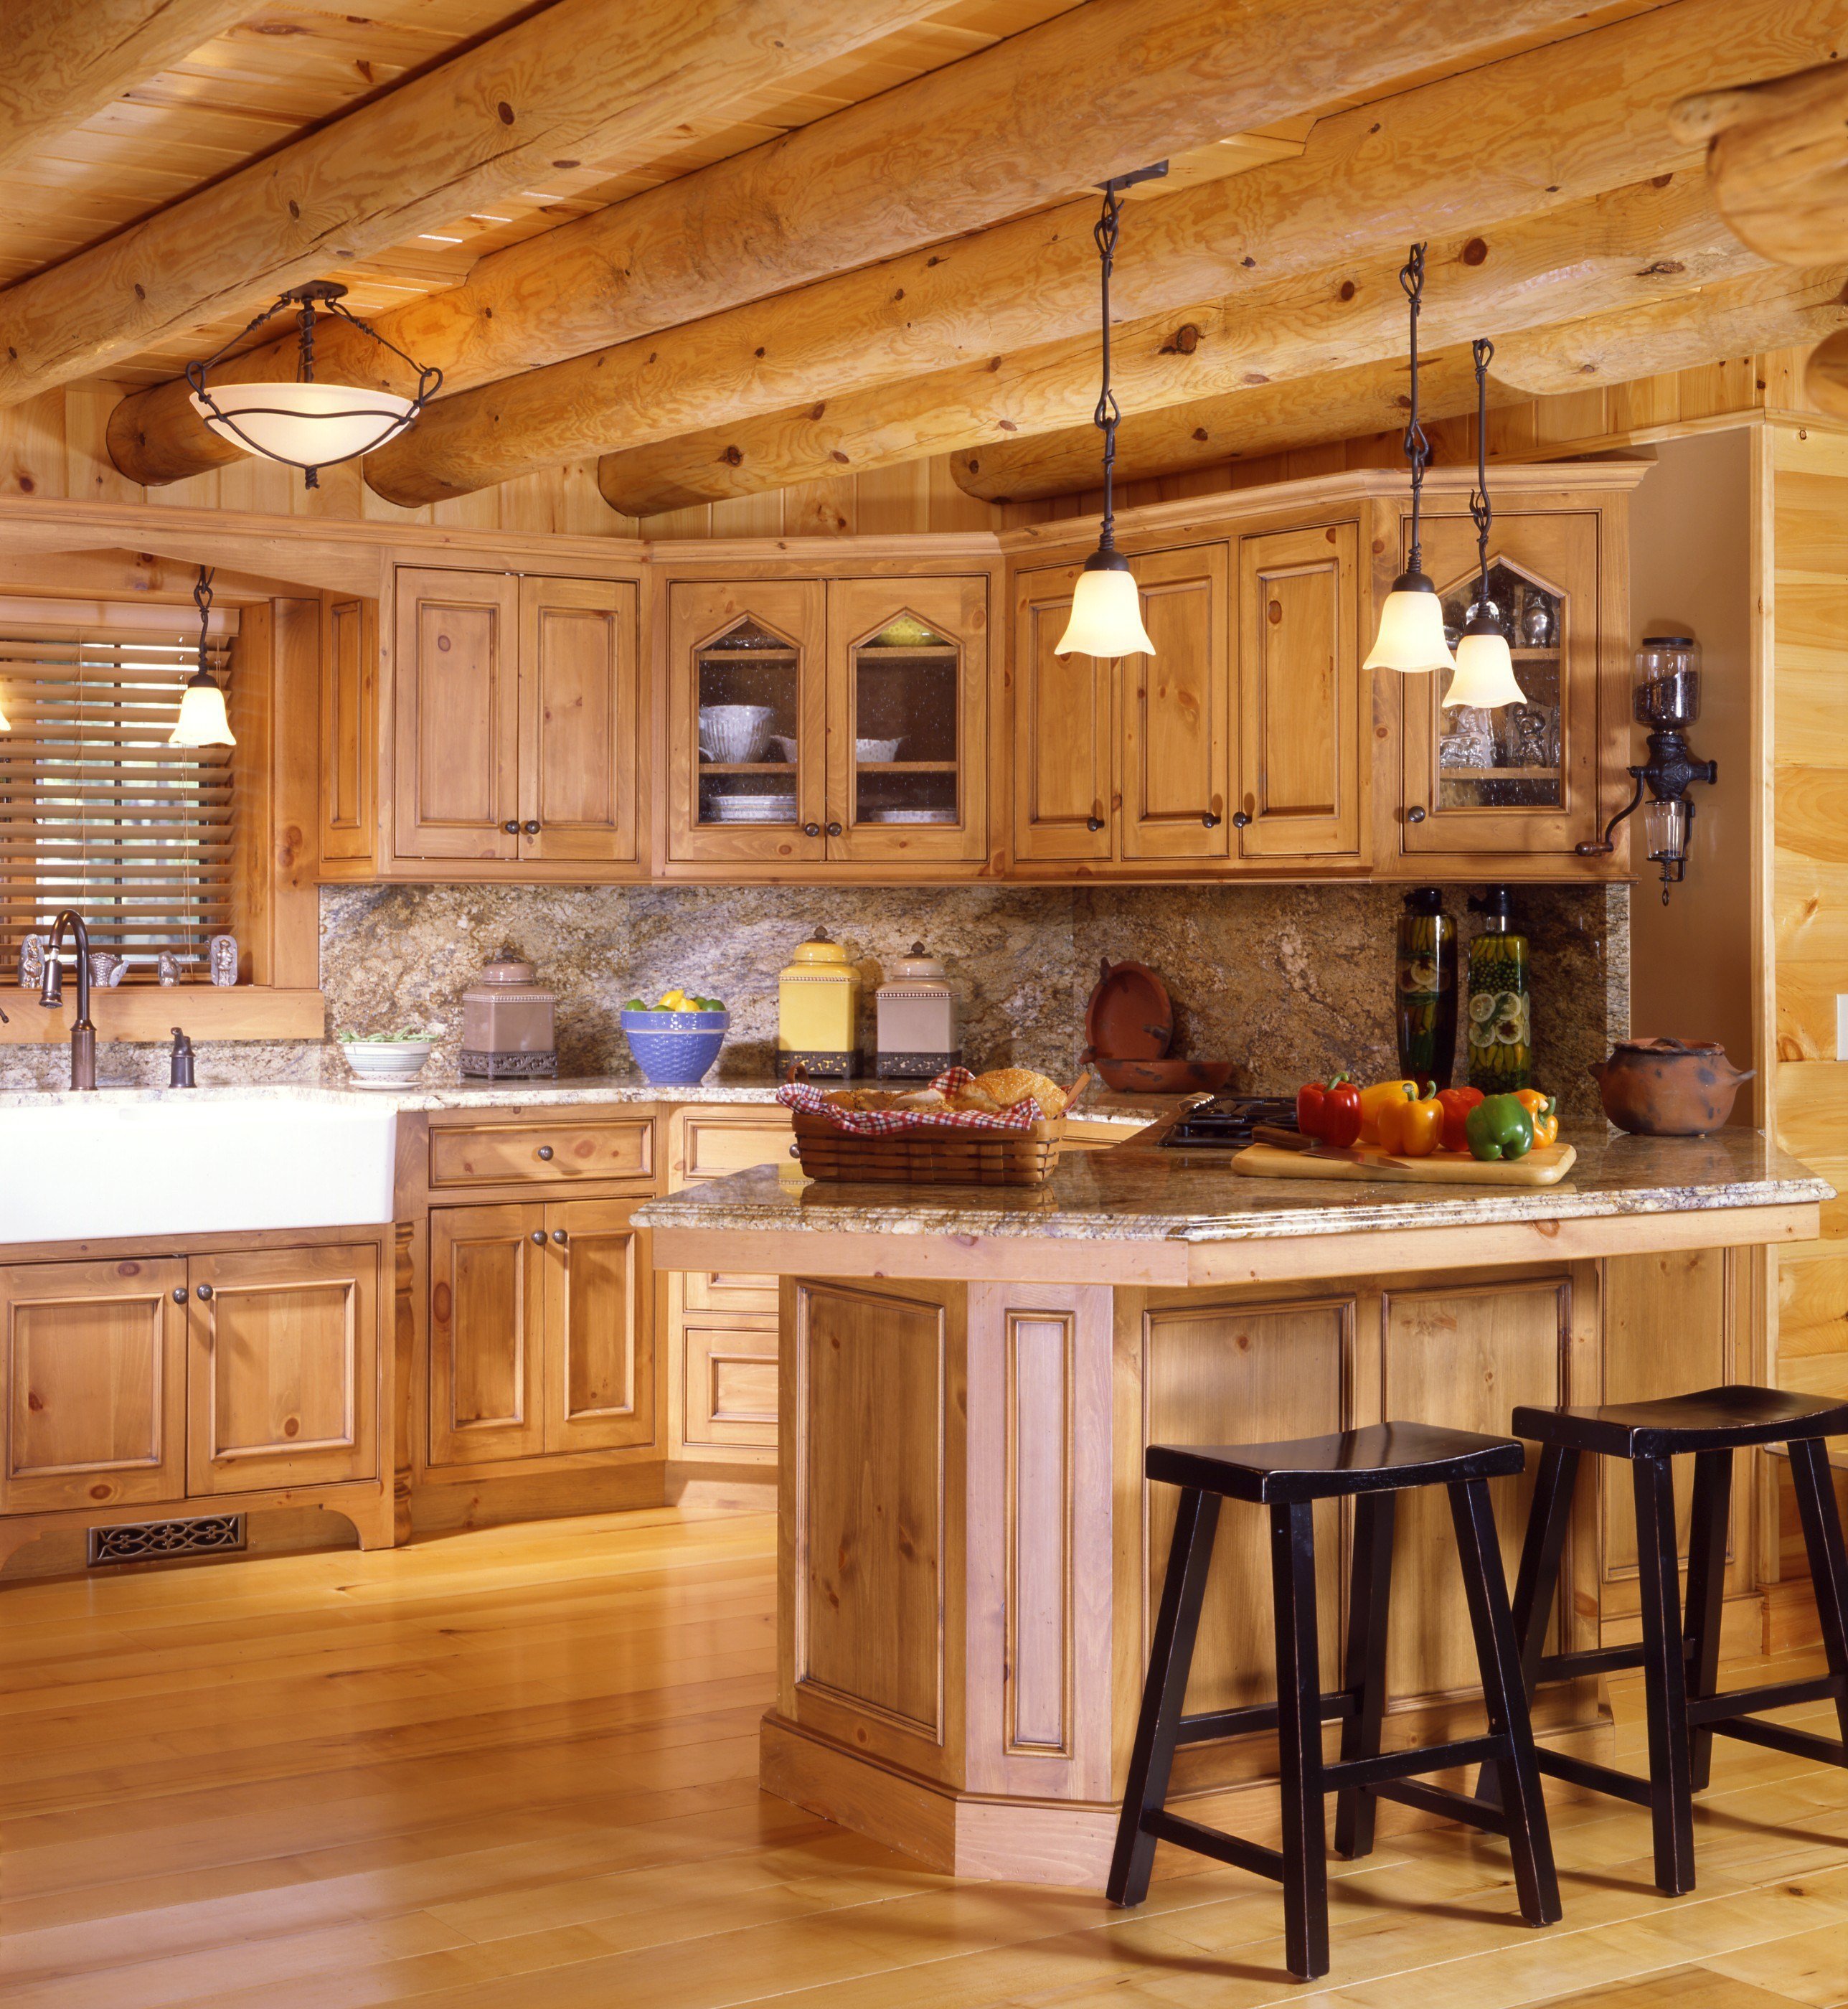 Кухня деревянная ремонт. Кухня в деревянном доме. Кухни в деревянноммдоме. Кухня в деревянном стиле. Красивая кухня в деревянном доме.